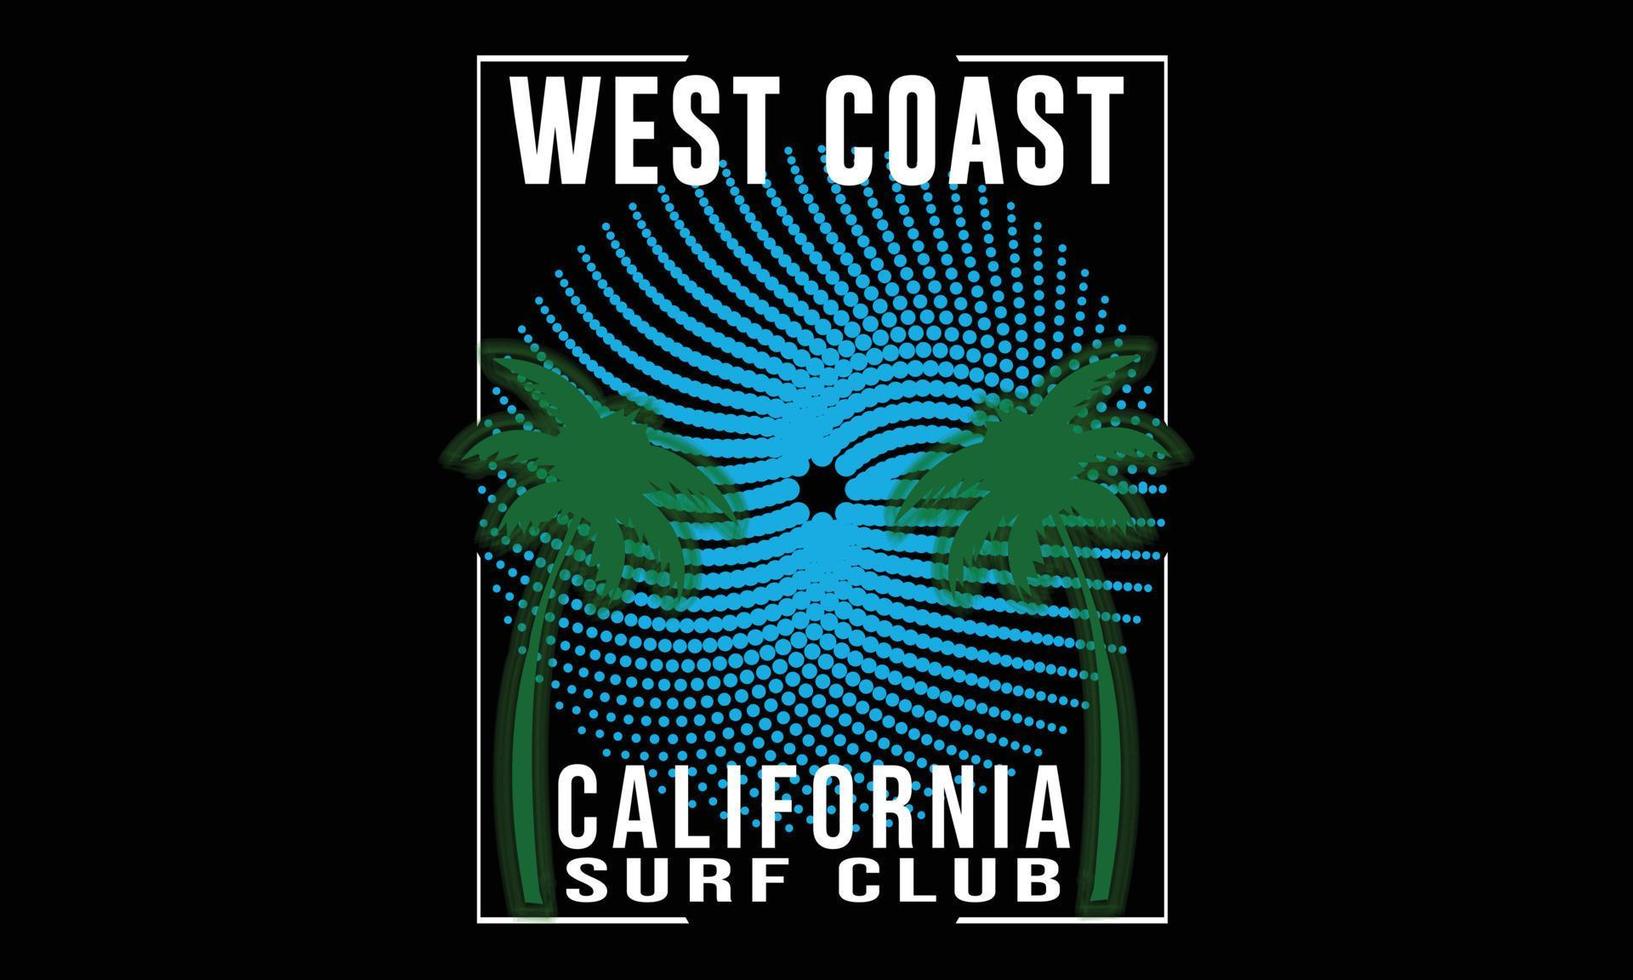 côte ouest californie surf club typographie illustration vectorielle et design coloré. conception de t-shirt vecteur typographie surf club côte ouest californie